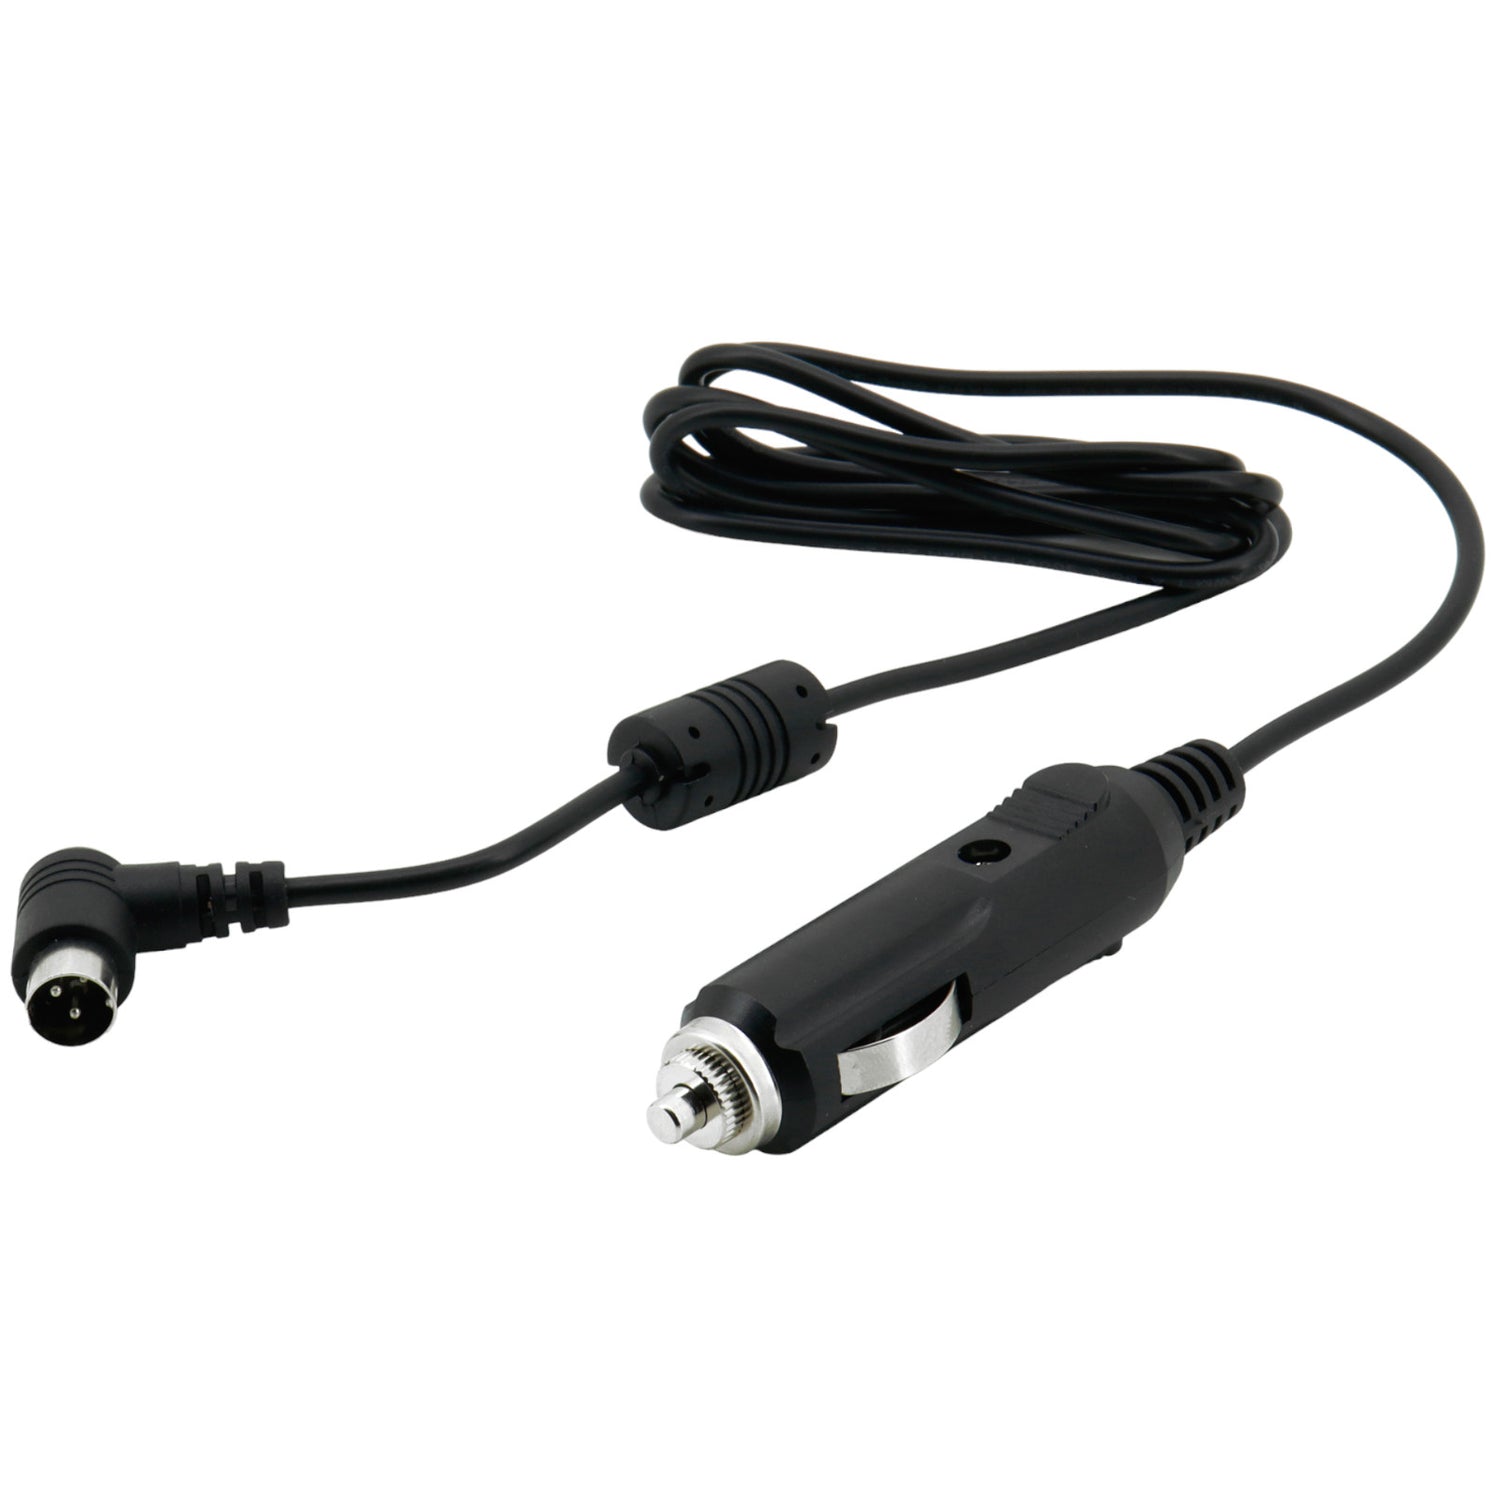 Soundmaster EliteLine KTD12V for kitchen radio KTD1020SI - 12 V car adapter for motorhomes, caravans, campers etc.